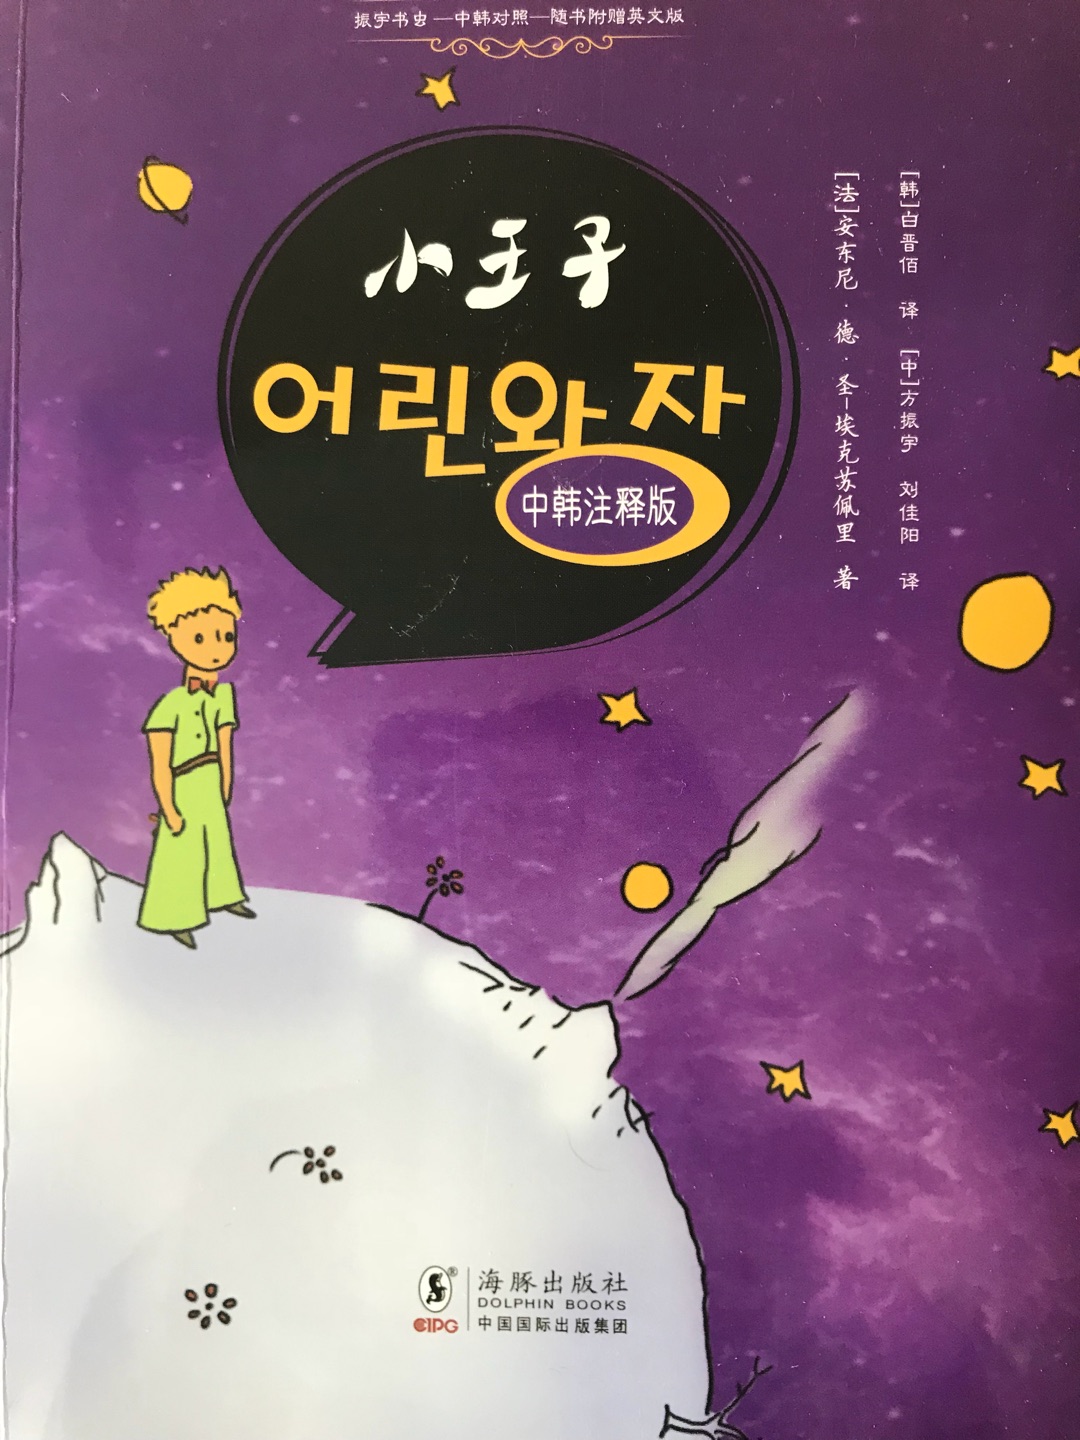 这版中文翻译的很一般，主要是为了韩语才买的